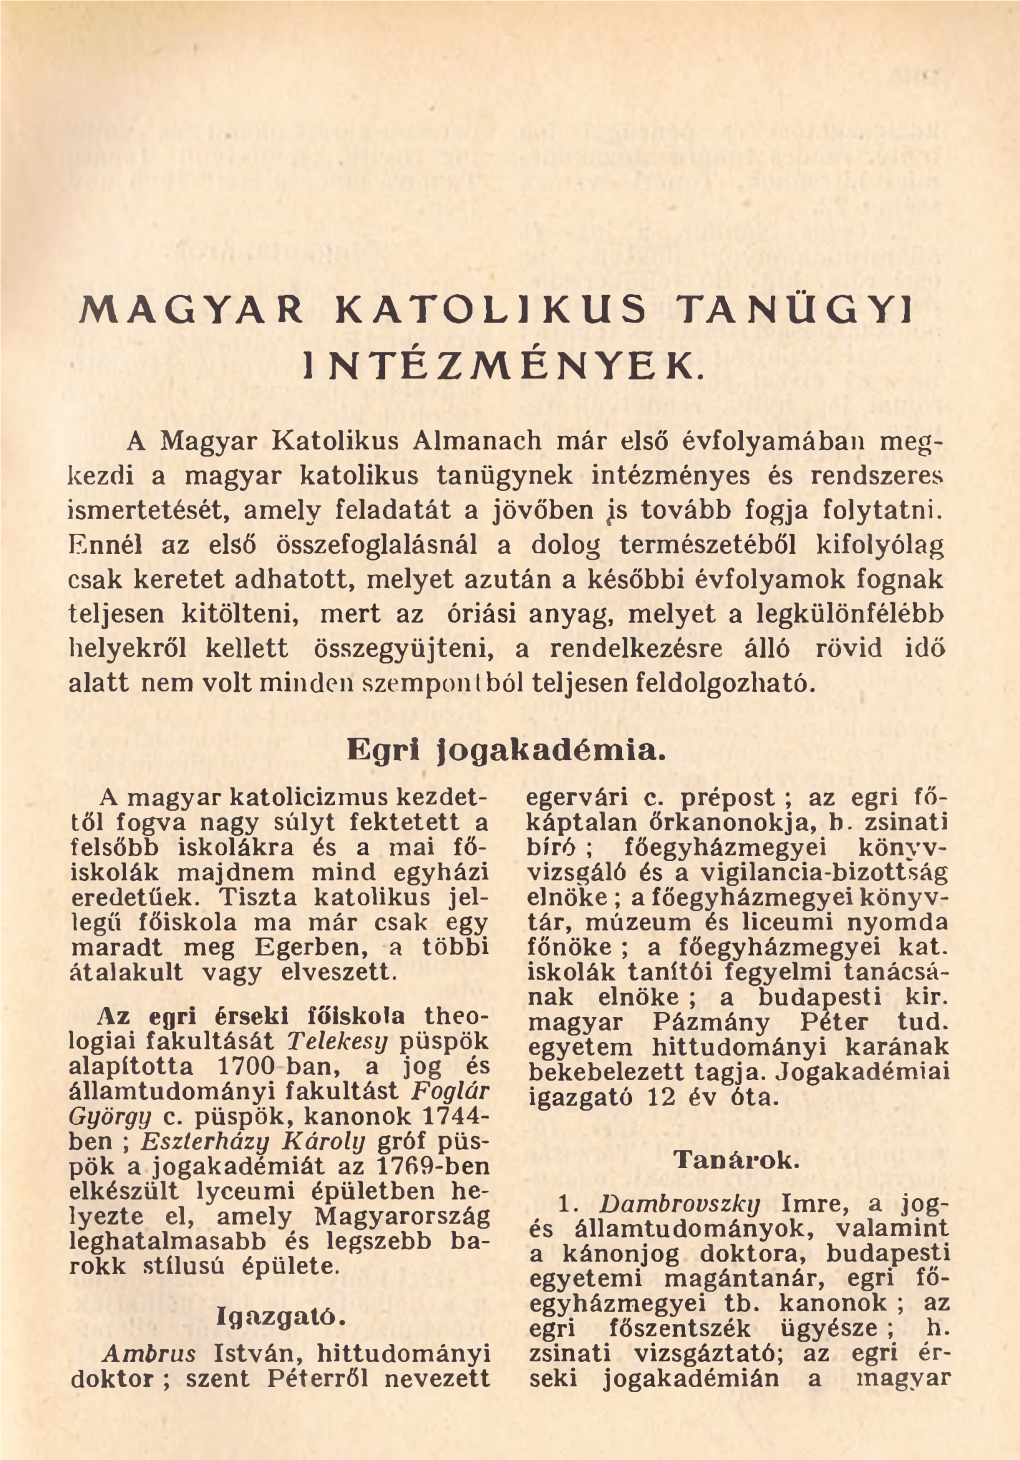 Magyar Katolikus Almanach